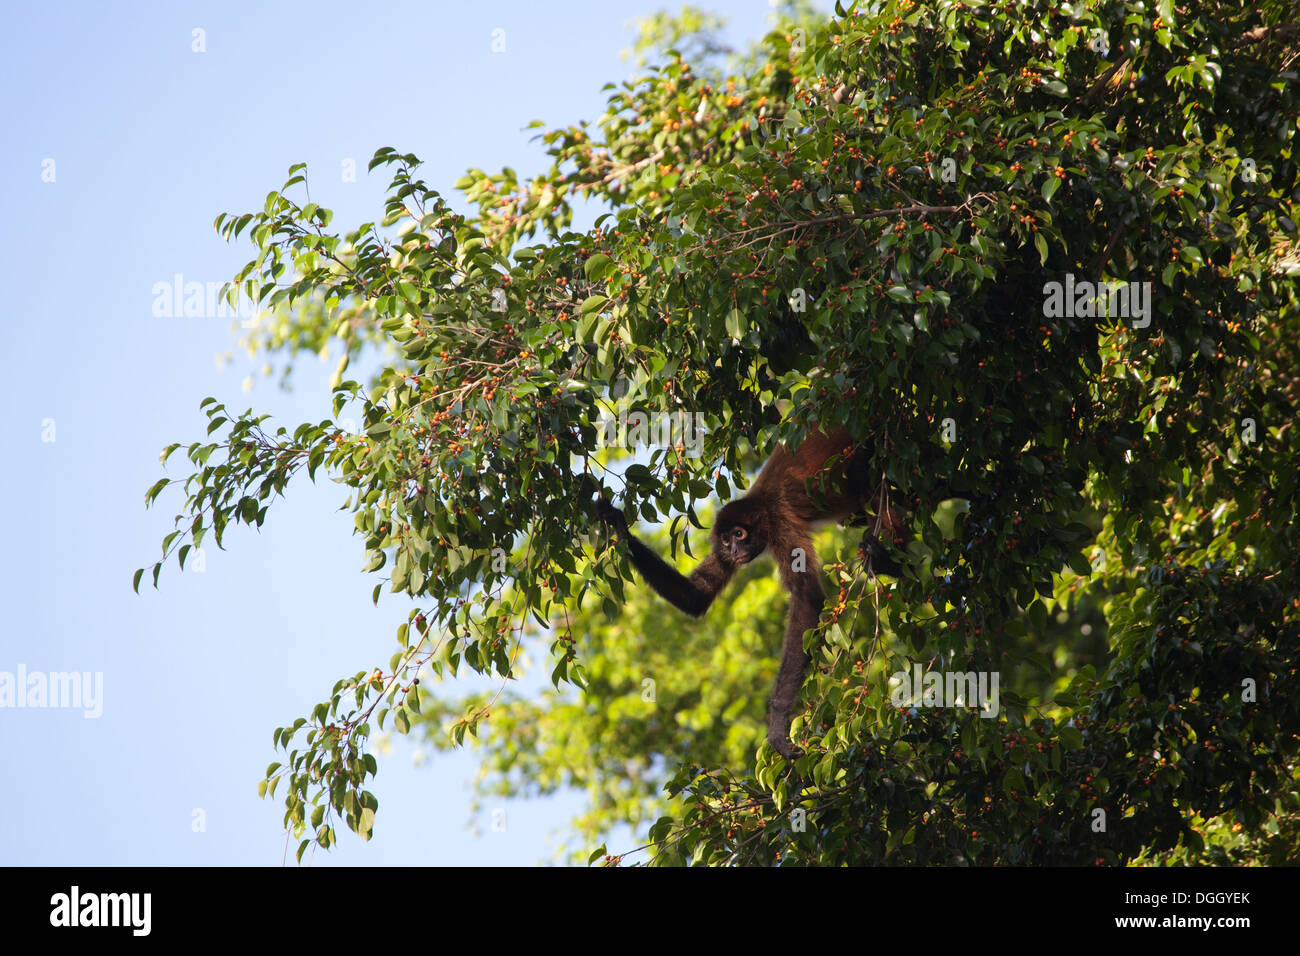 Schwarz - übergeben Spider Monkey (Ateles geoffroyi) Nahrungssuche auf fruchtkörper Baum im tropischen Regenwald. Stockfoto